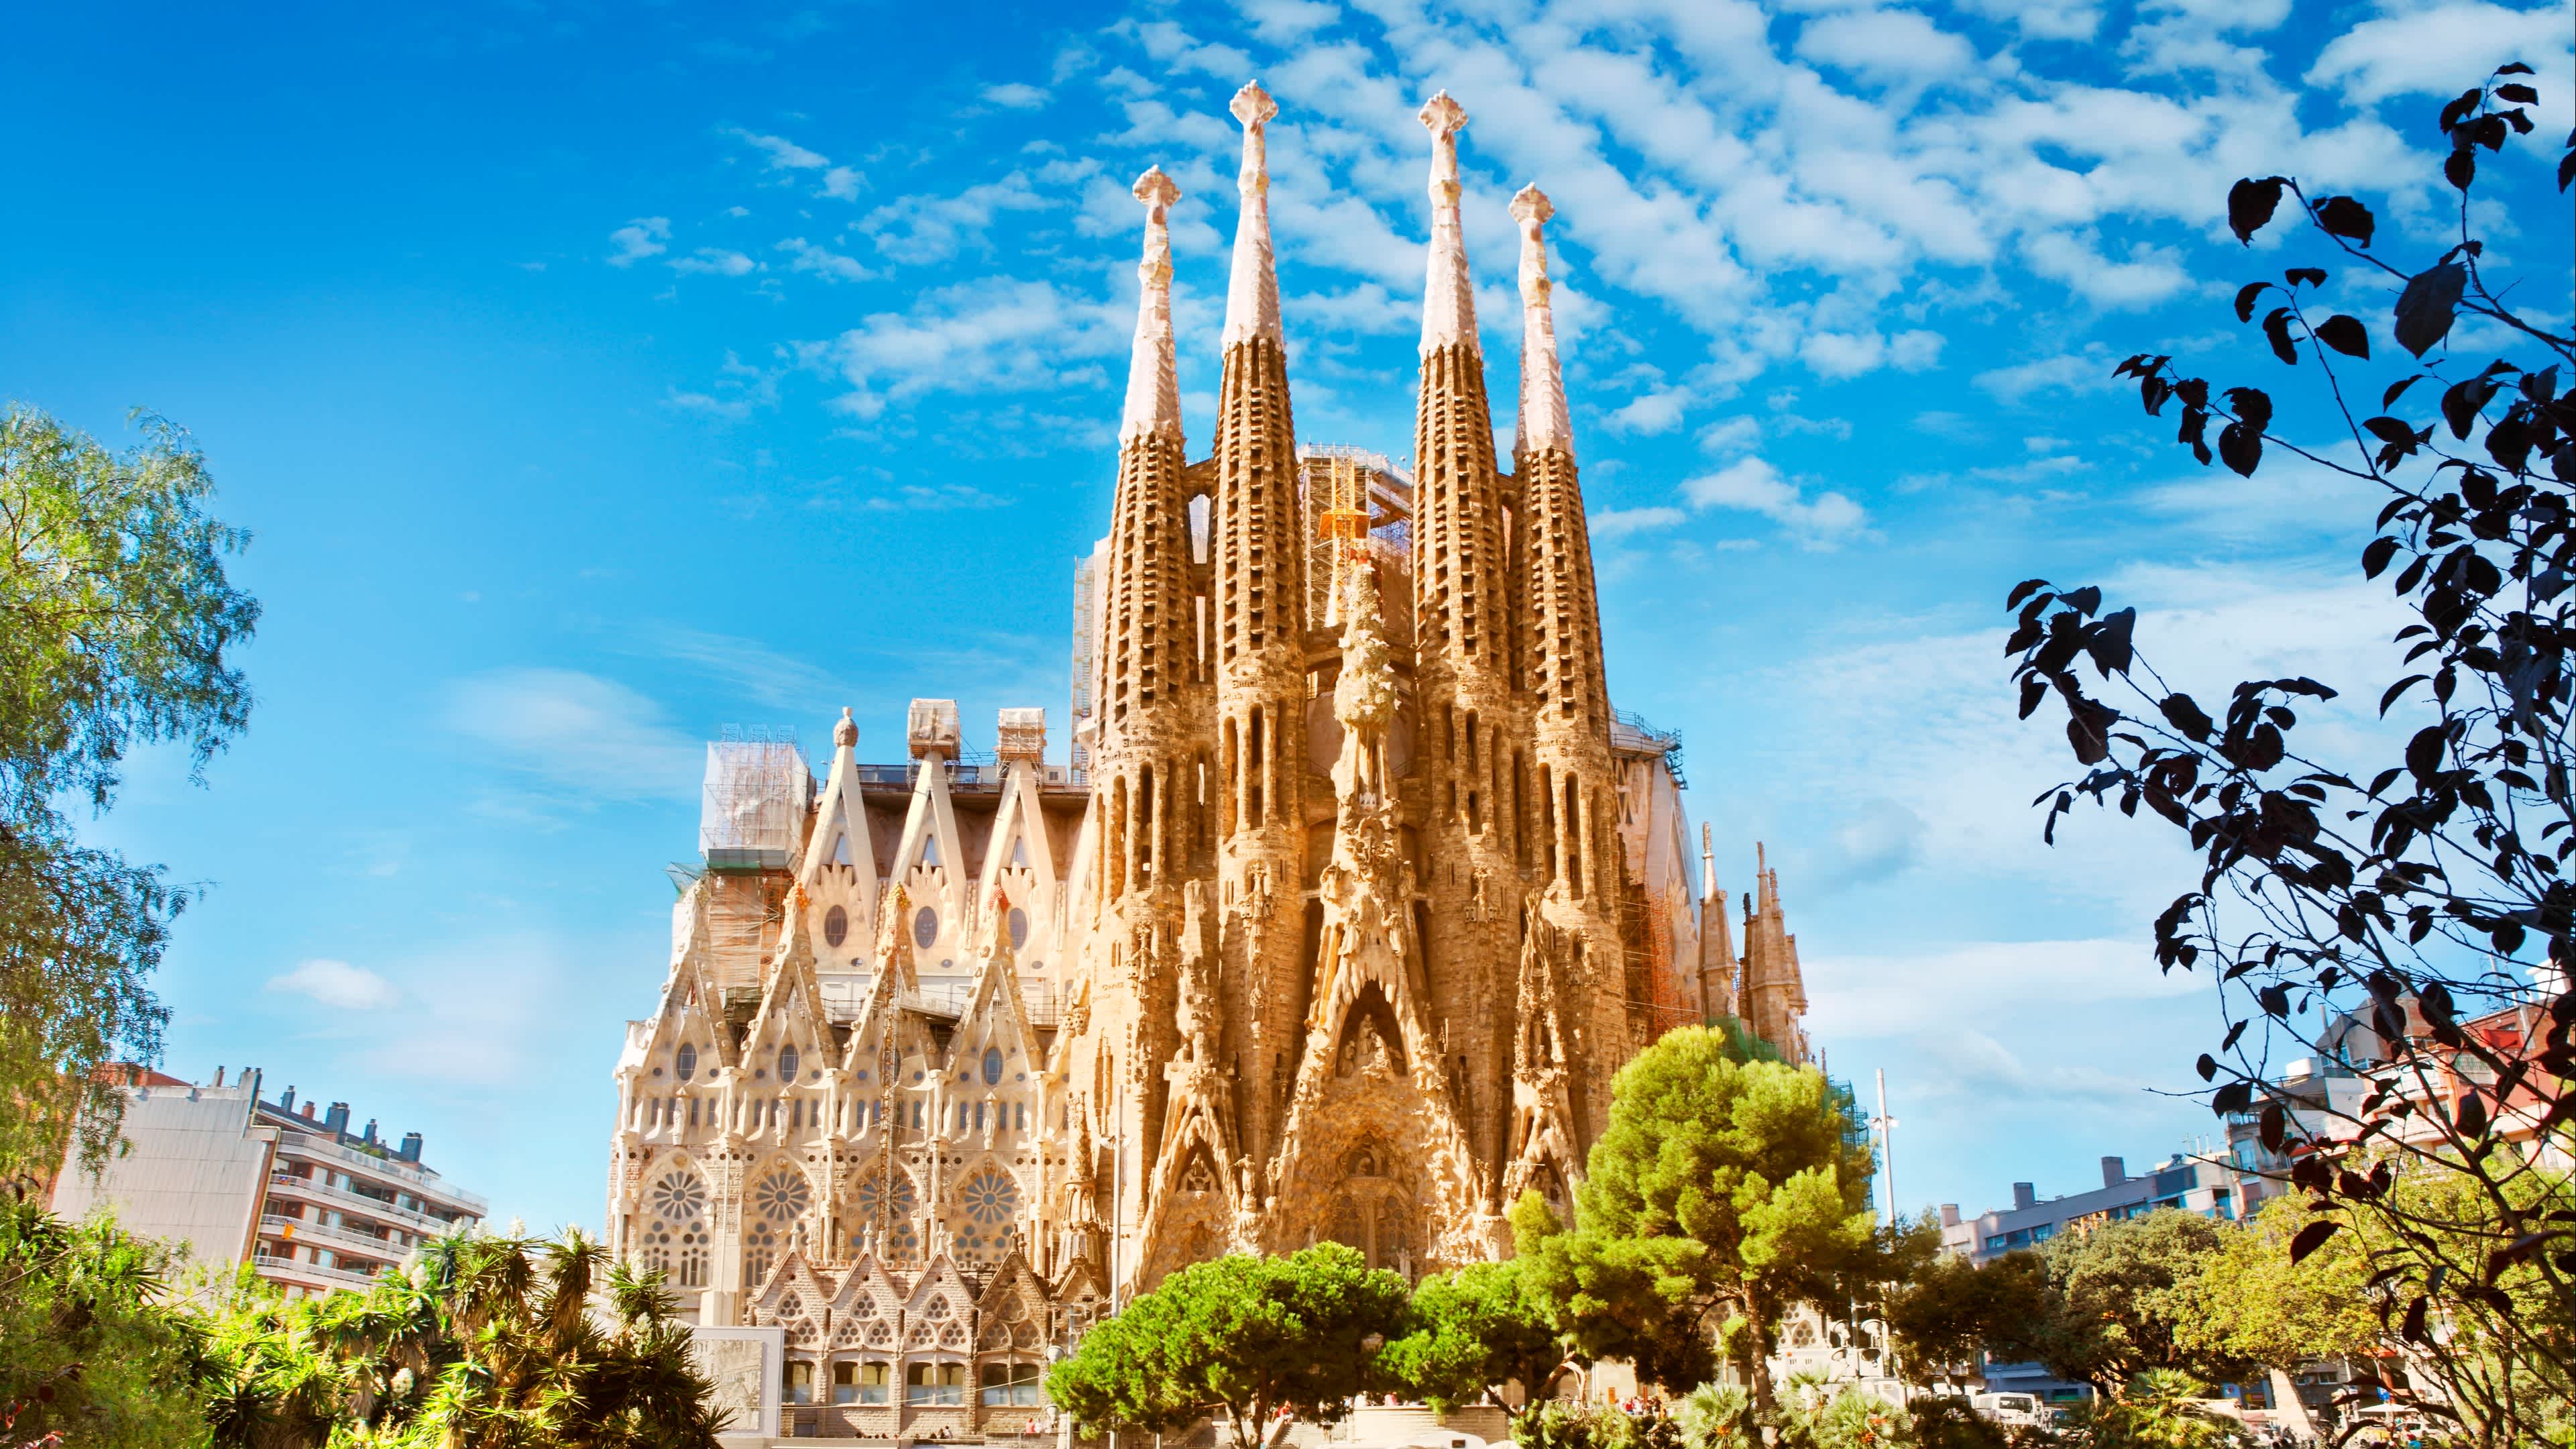 Découvrez l'incroyable cathédrale de la Sagrada Familia pendant votre séjour à Barcelone.